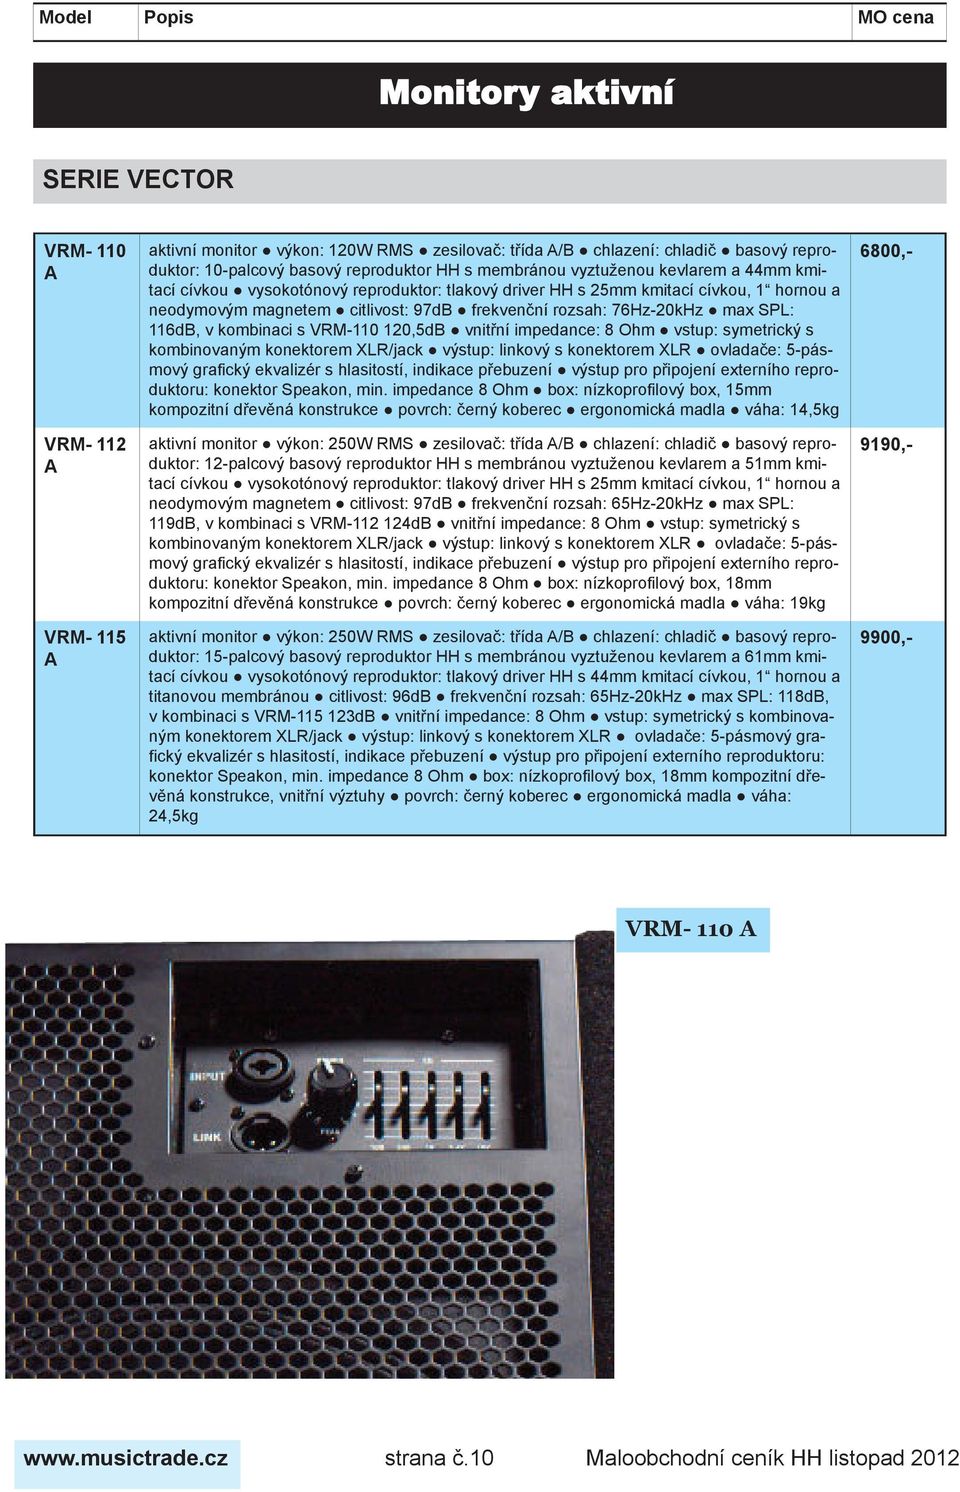 116dB, v kombinaci s VRM-110 120,5dB vnitřní impedance: 8 Ohm vstup: symetrický s kombinovaným konektorem XLR/jack výstup: linkový s konektorem XLR ovladače: 5-pásmový grafický ekvalizér s